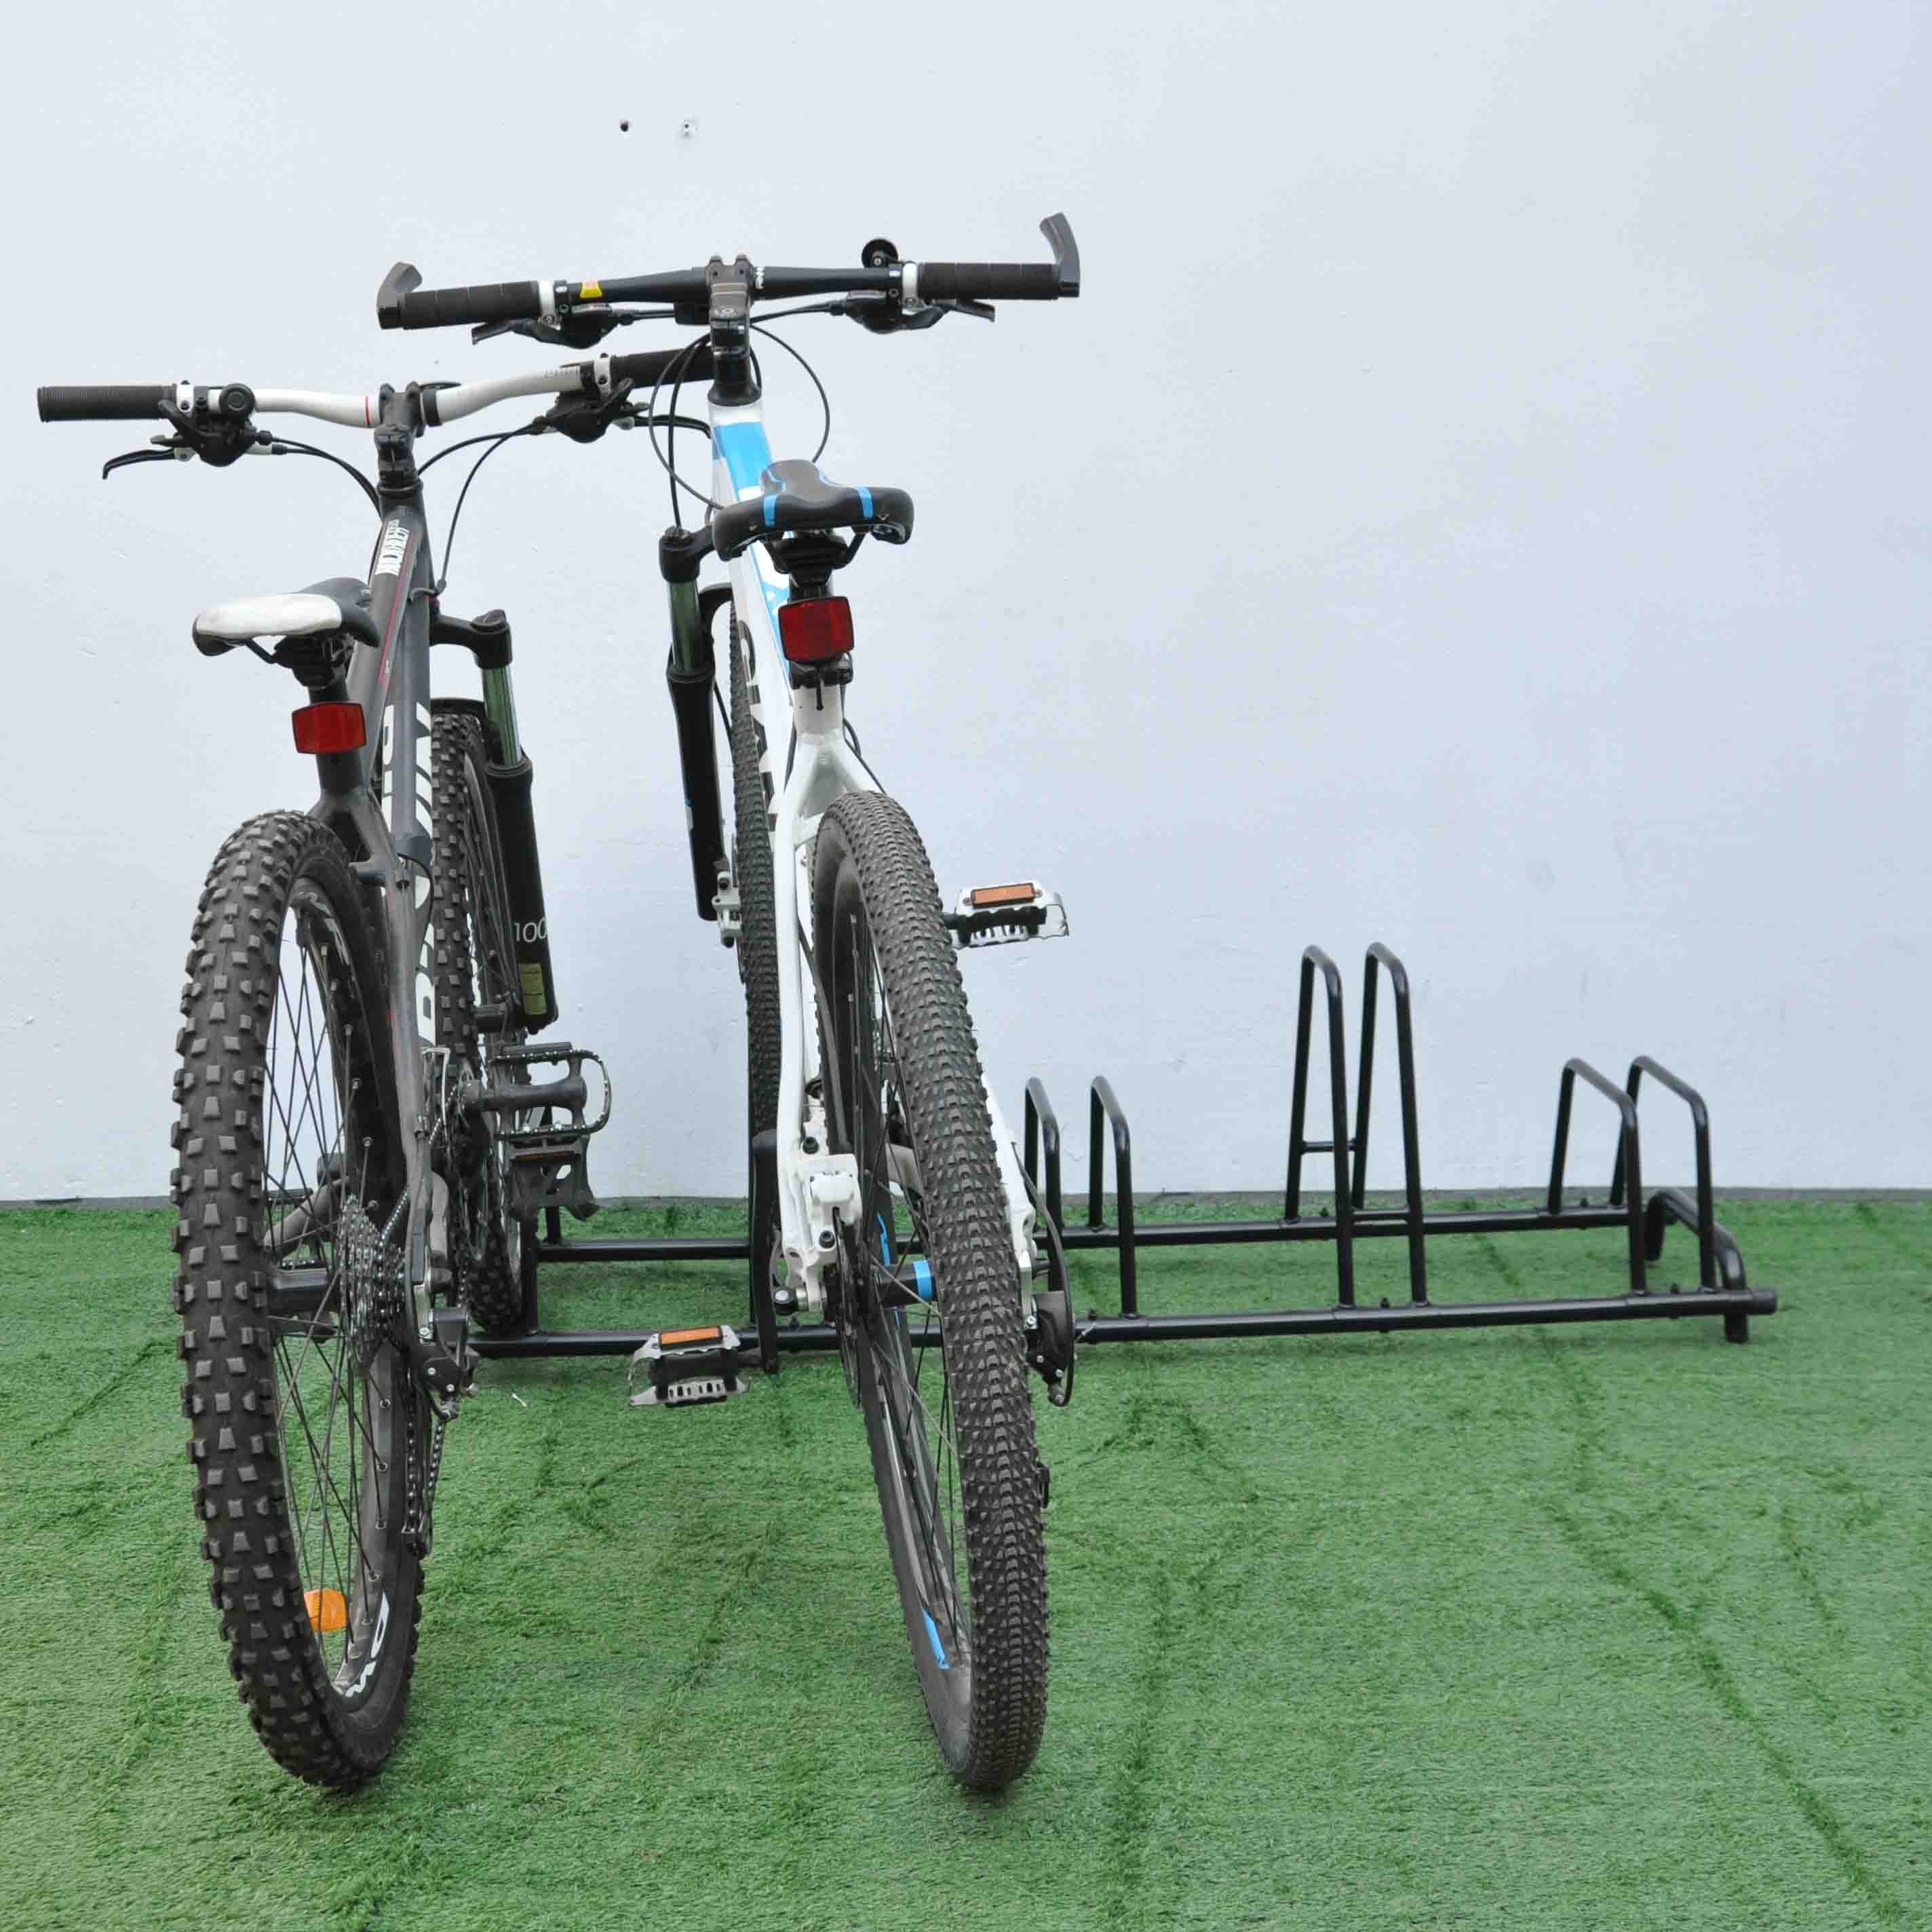 Hoher niedriger Fahrradständer aus Karbonstahl zur Bodenmontage für 5 Fahrräder